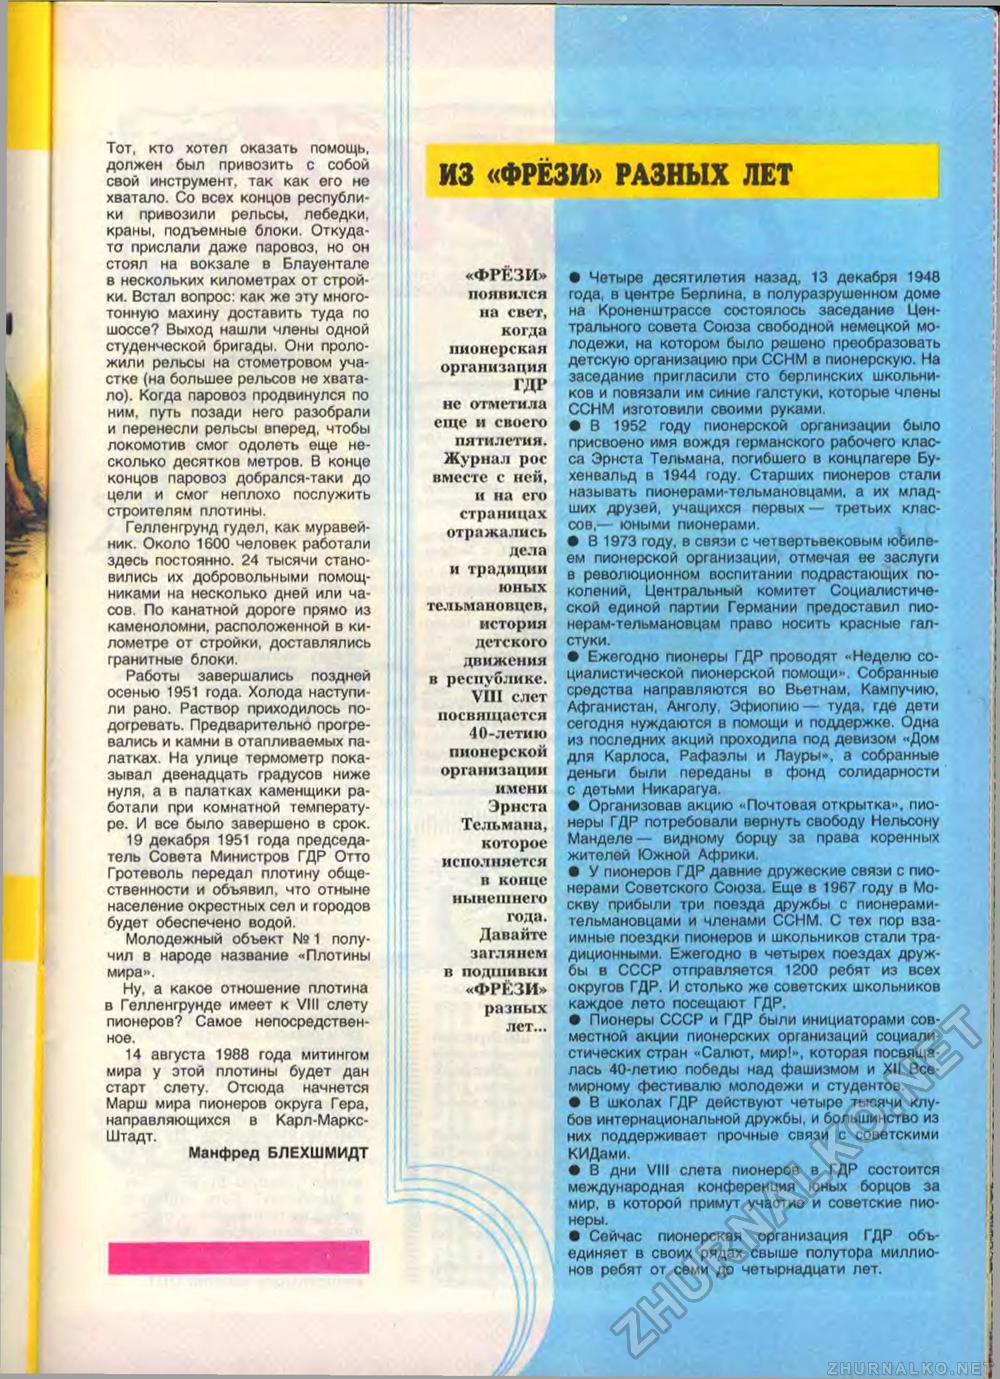  1988-08,  27